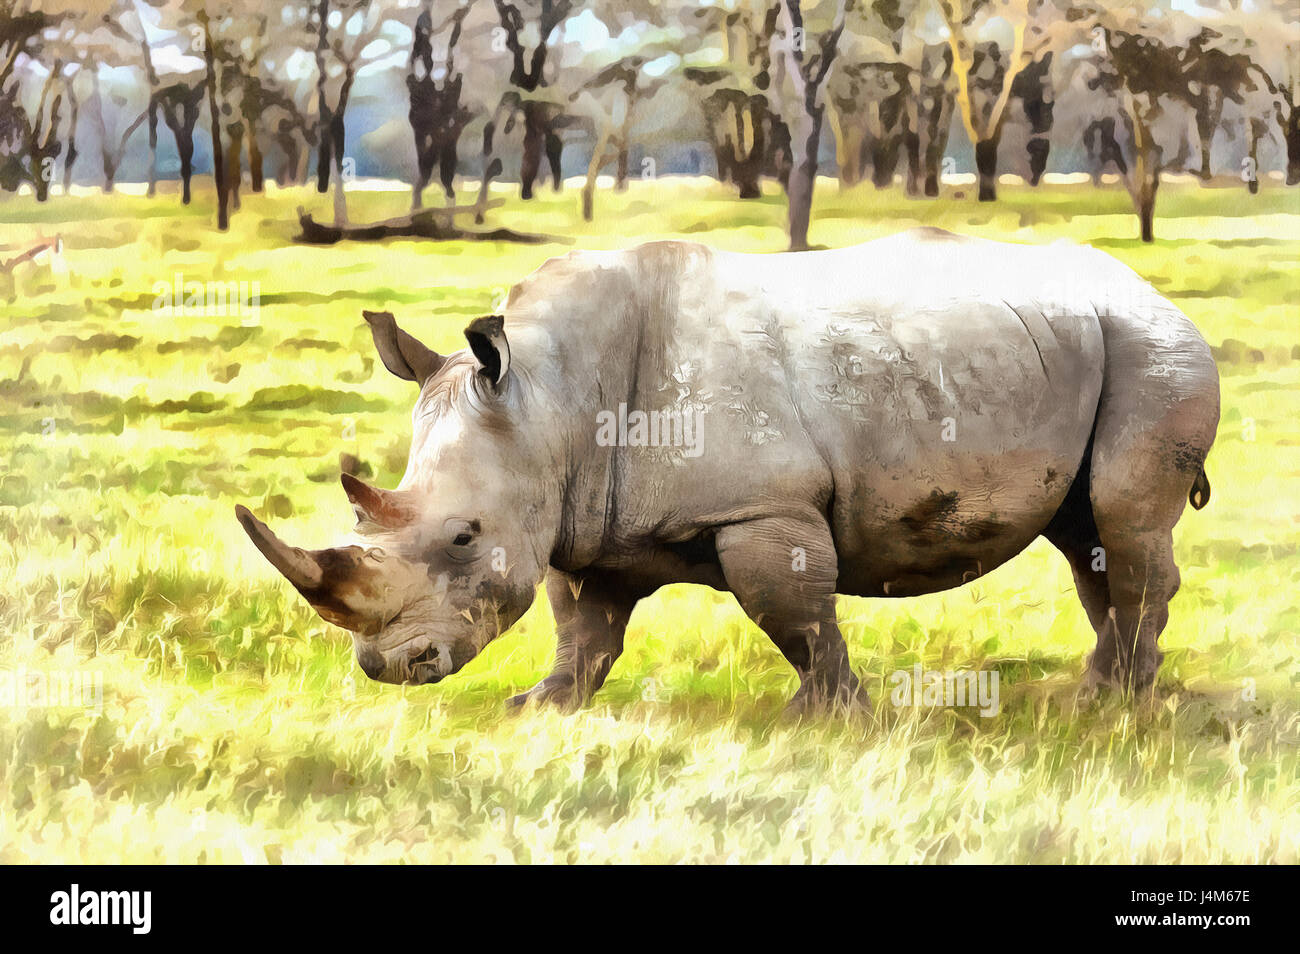 Le rhinocéros blanc (Ceratotherium simum) peinture colorée, Parc national du lac Nakuru, Kenya Banque D'Images